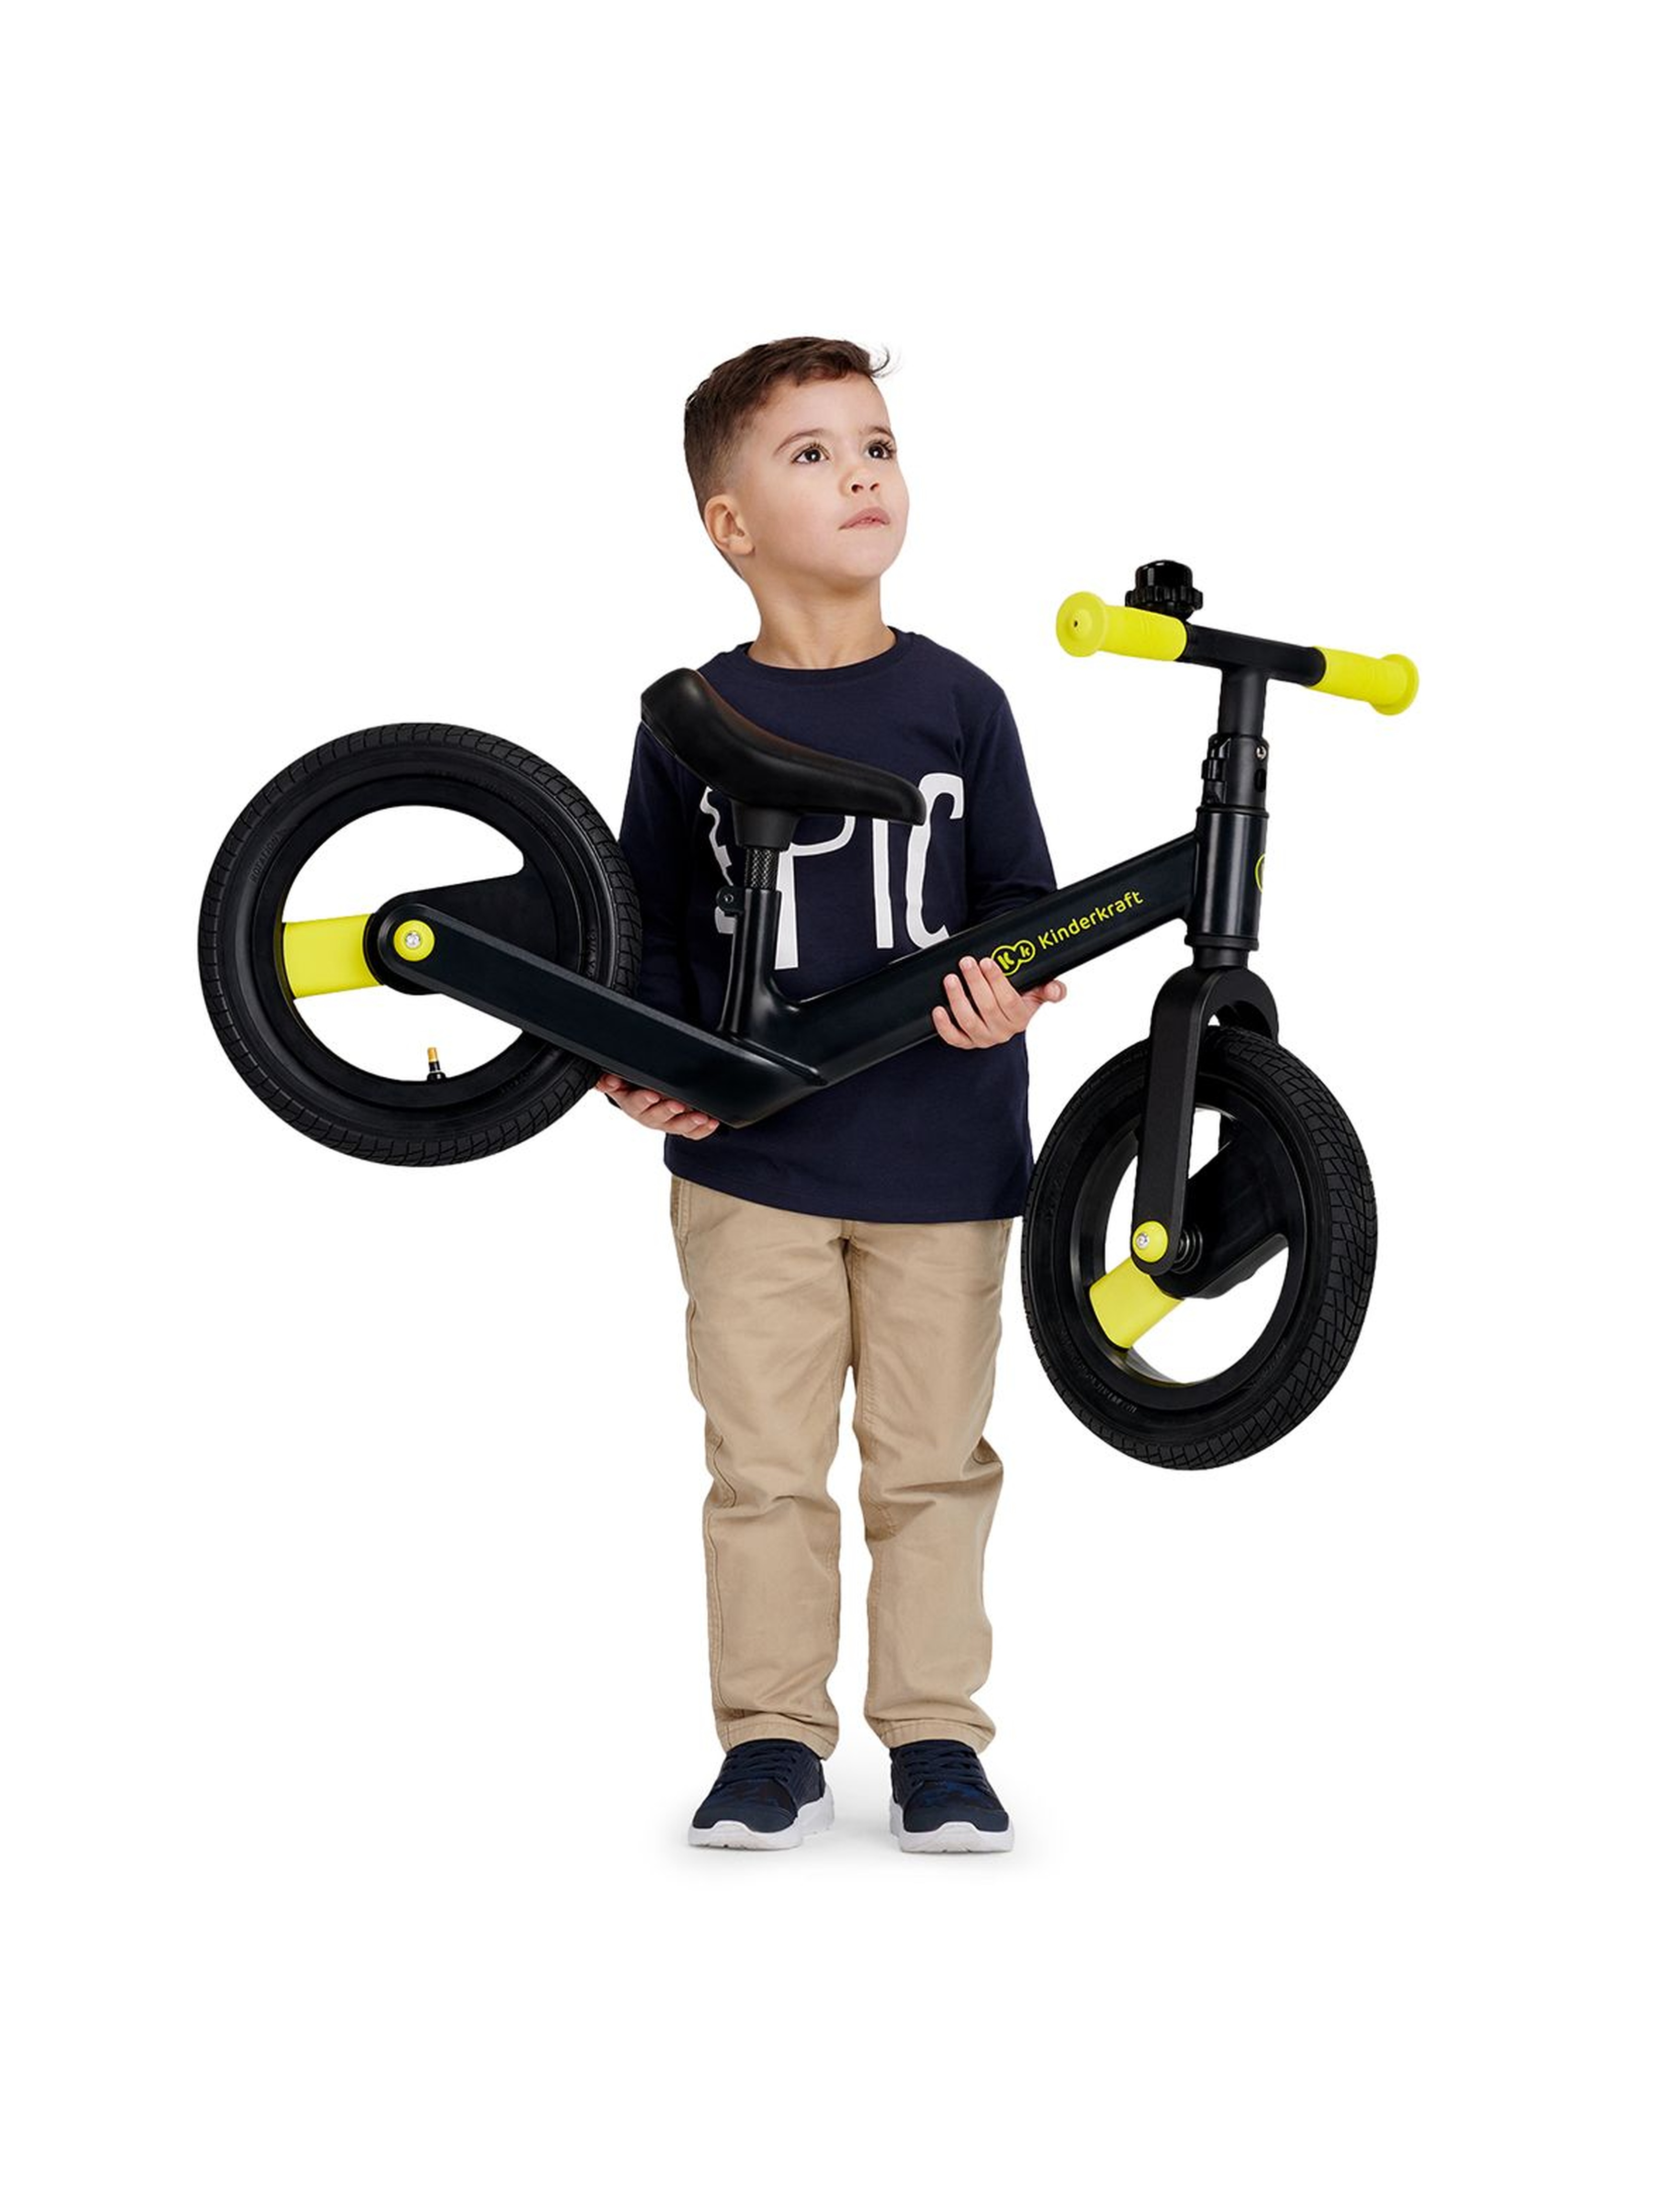 Kinderkraft rowerek biegowy Goswift - czarny wiek 3+